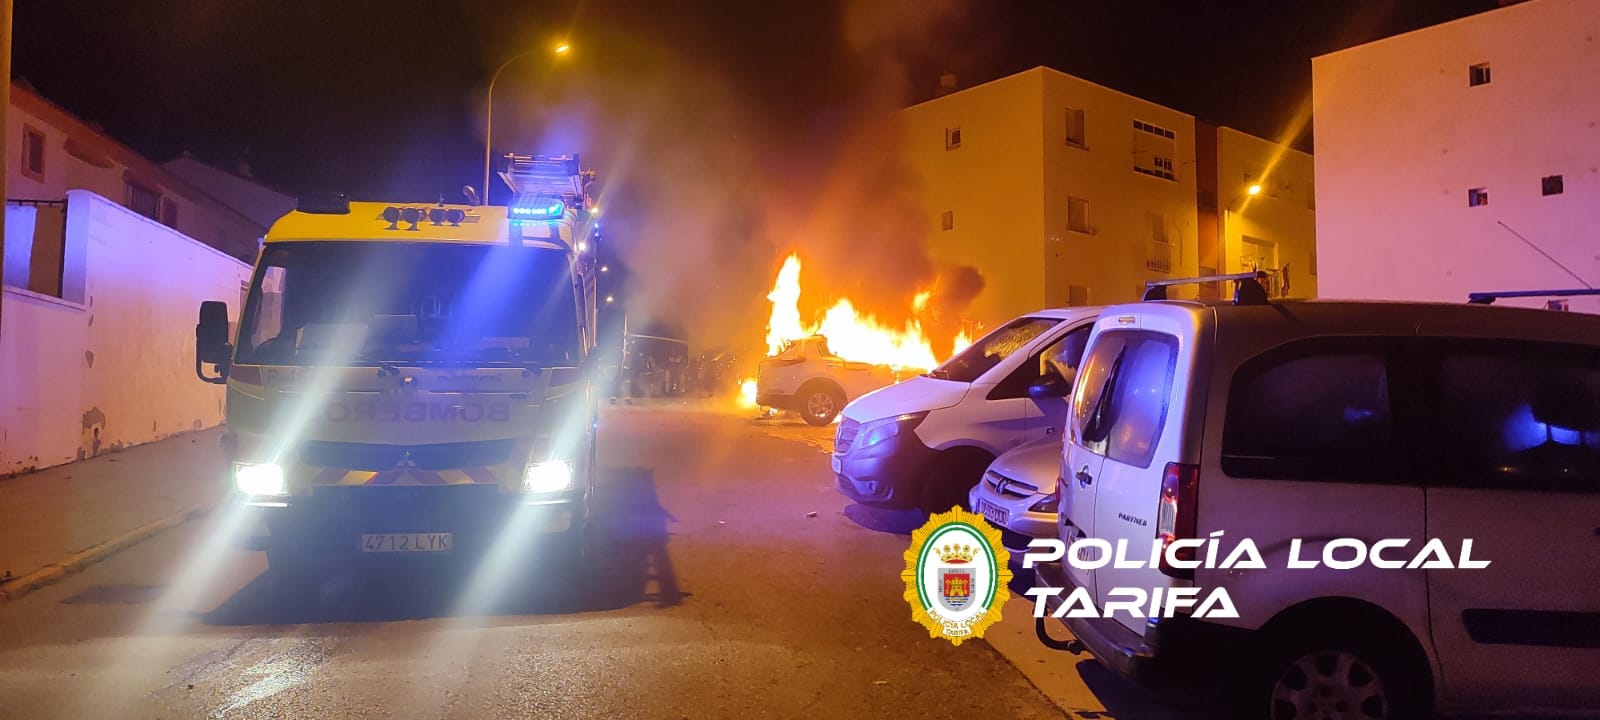 Varios coches estacionados arden durante la madrugada en Tarifa 